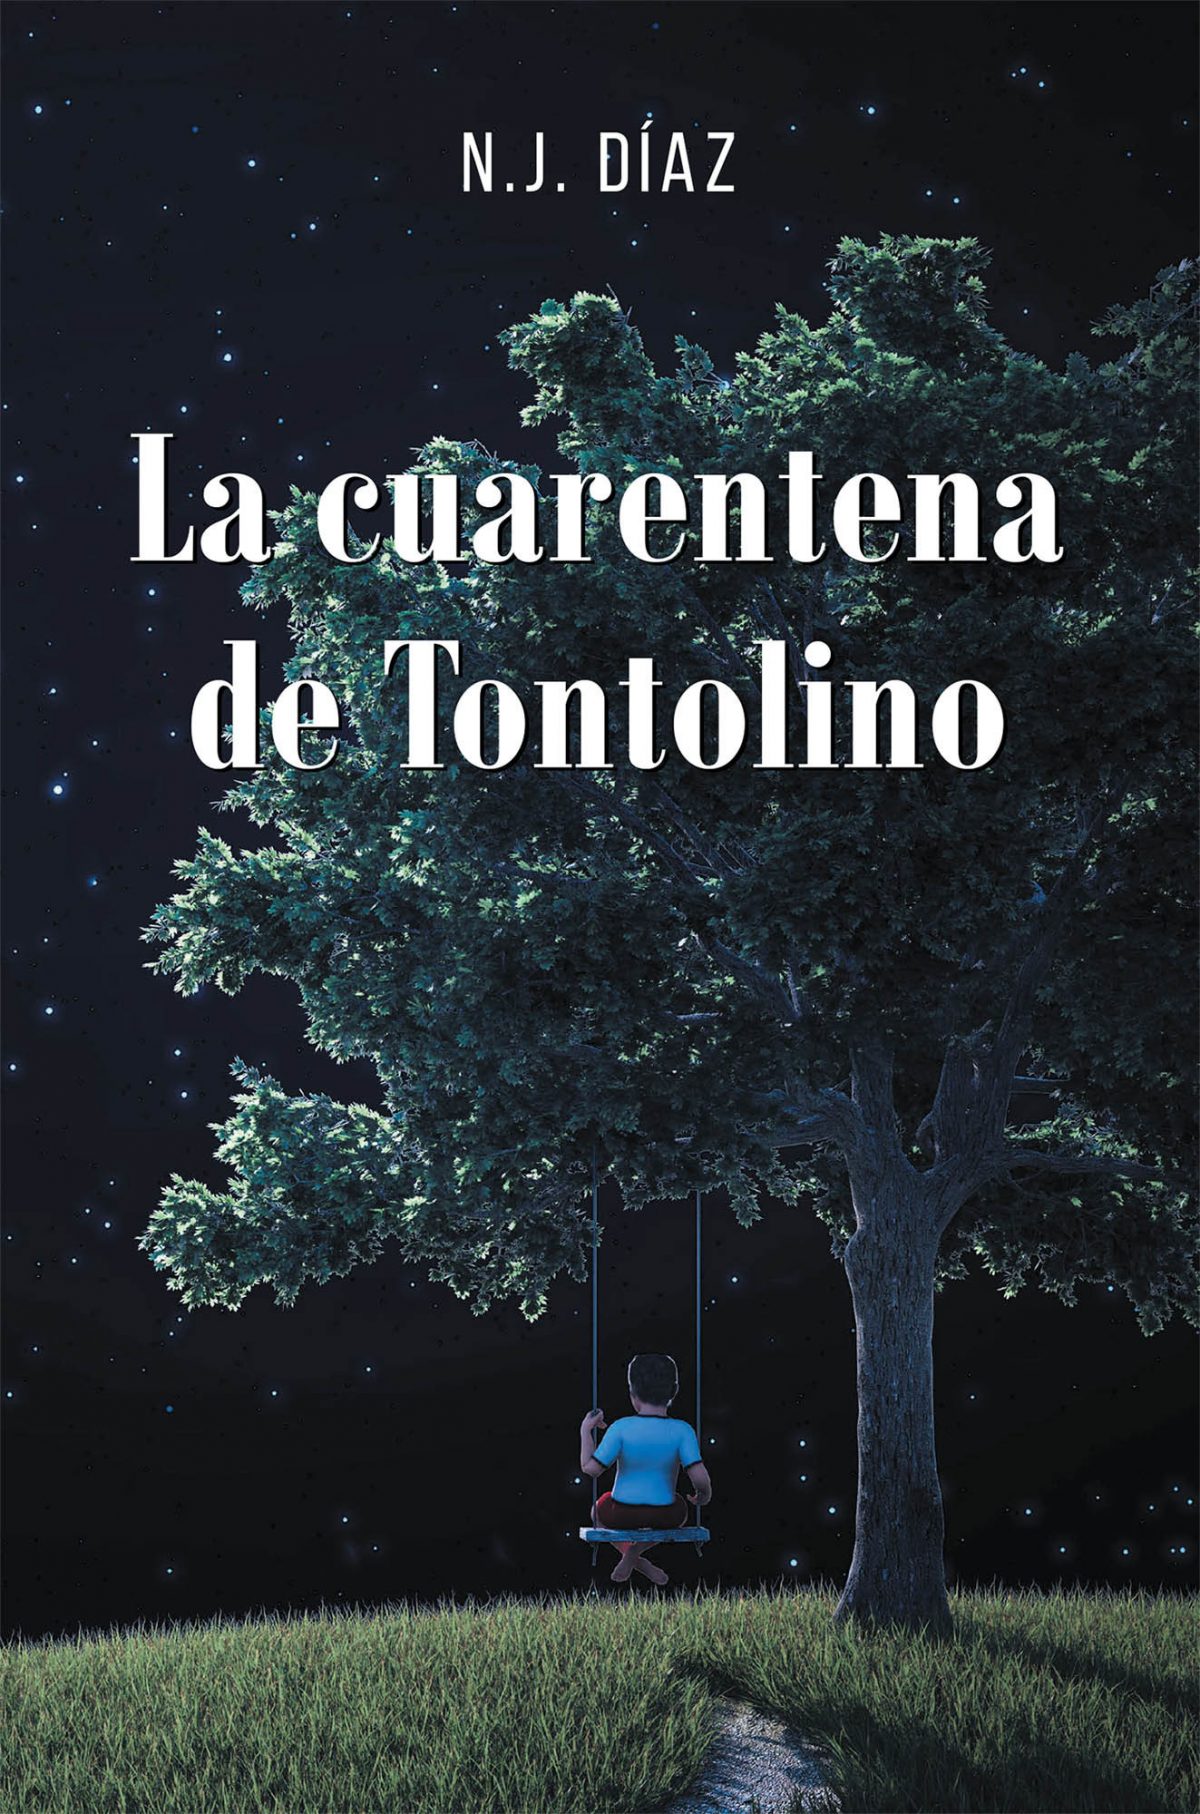 La más reciente obra publicada de la autora N.J. Díaz, La Cuarentena de Tontolino, nos presenta una recopilación de historias de Tontolino, un inocente niño que quiere salvar al mundo de los graves problemas que surgen como consecuencia del coronavirus